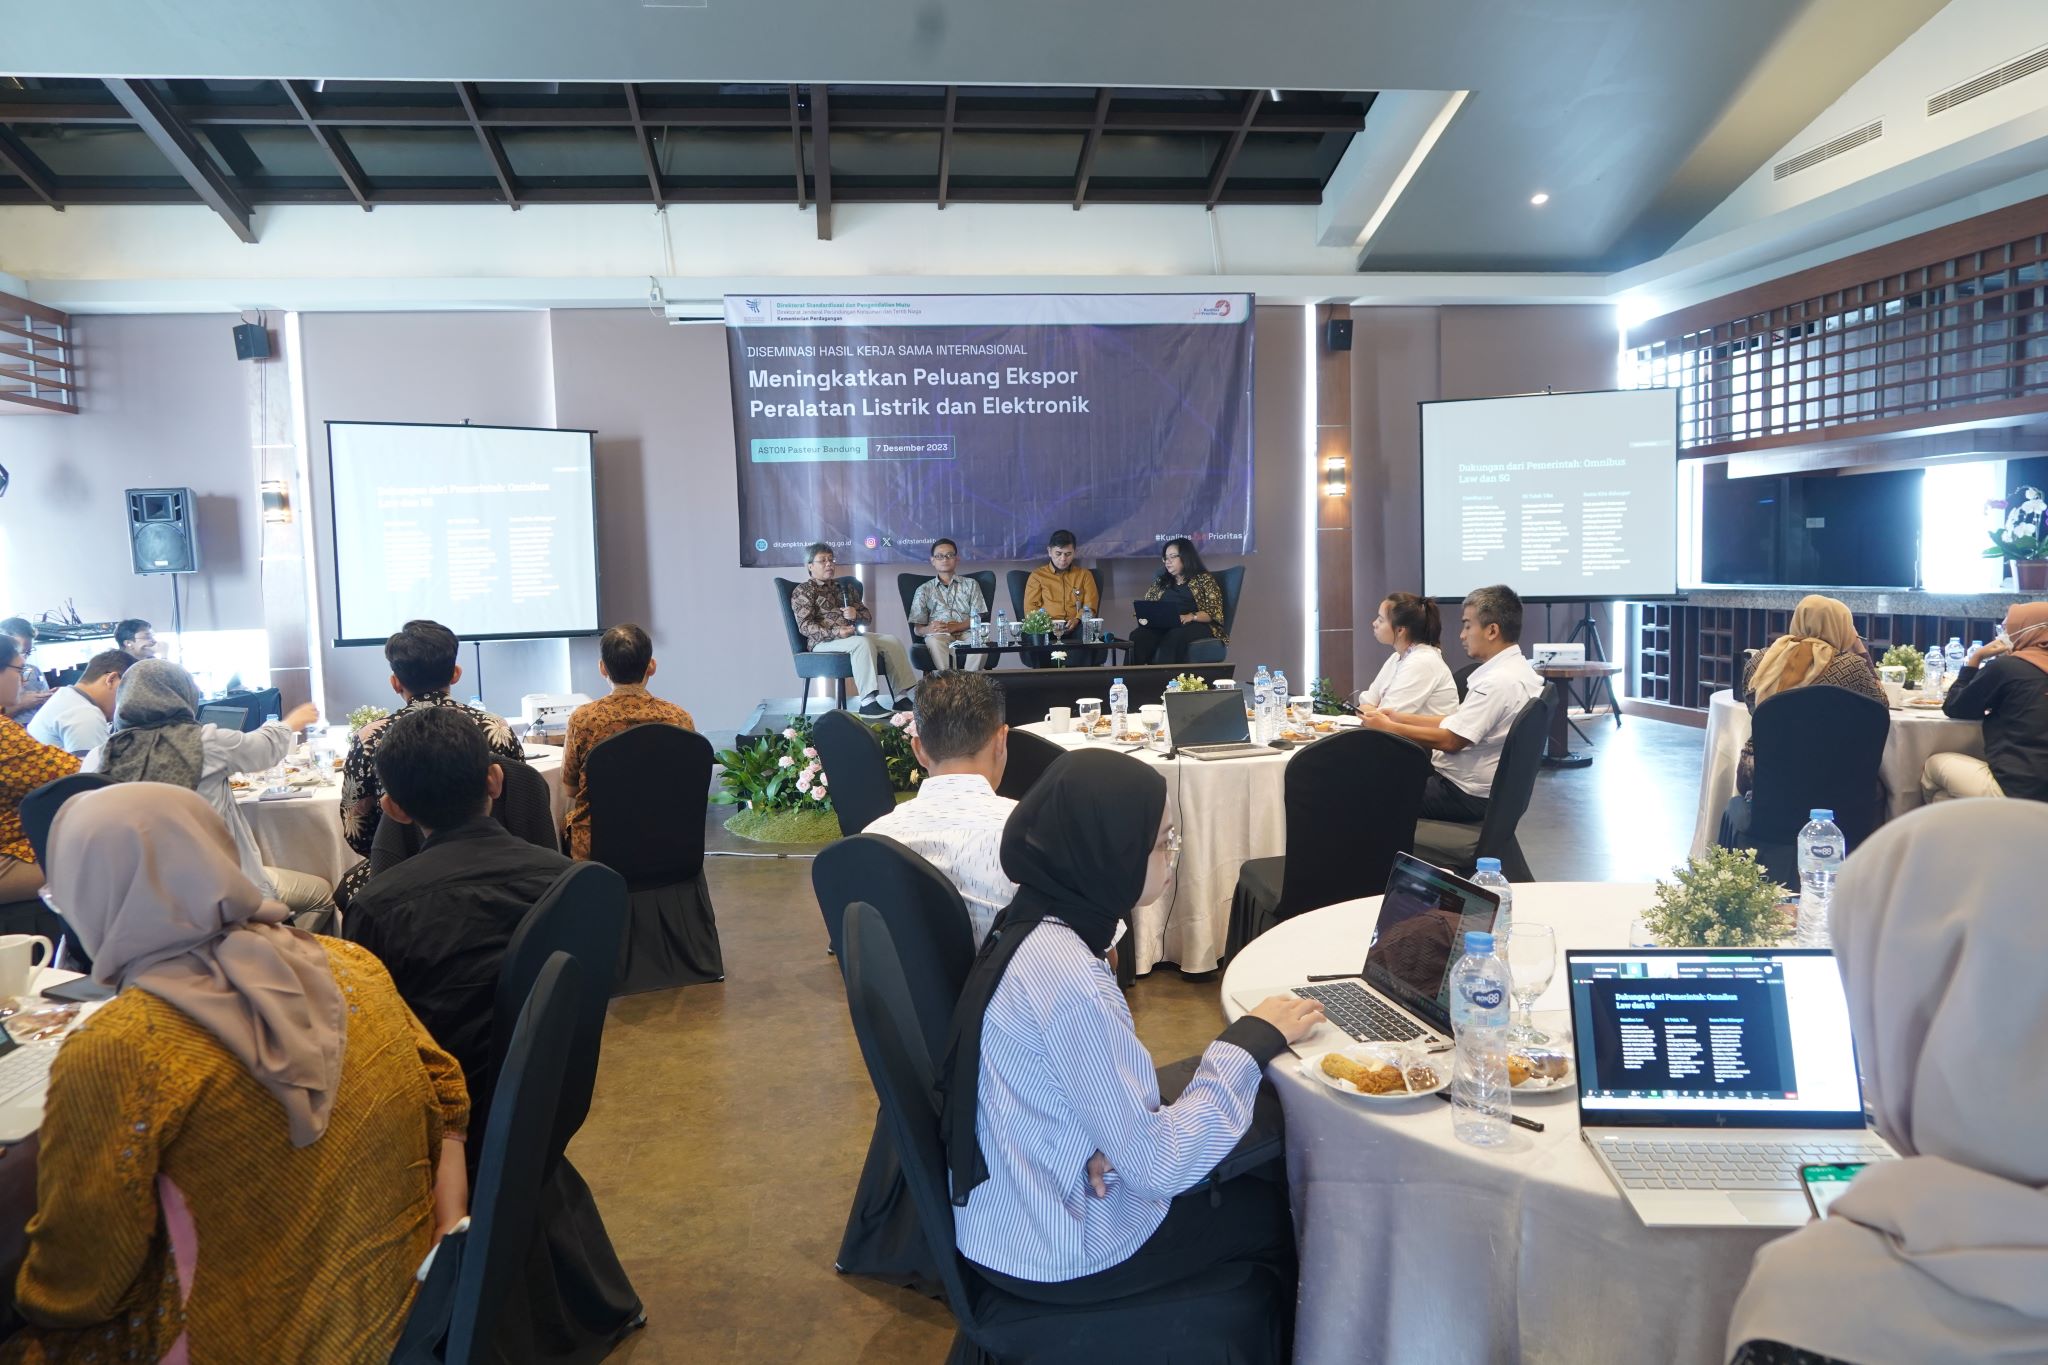 Acara dibuka oleh Direktur Standalitu, Matheus Hendro Purnomo dan dikemas dalam bentuk diskusi panel oleh para narasumber. Diseminasi bertujuan untuk meningkatkan pemahaman para pemangku kepentingan dan mendorong pelaku usaha untuk mengoptimalkan manfaat dari berbagai hasil kesepakatan yang telah dicapai pada forum Joint Sector Committee for Electrical and Electronic Equipment (JSC EEE) di ASEAN dalam menghadapi implementasi Agereement on The ASEAN Harmonized Electrical and Electronic Equipments Regulatory Regime (AHEEERR). AHEEERR merupakan persetujuan ASEAN mengenai Harmonisasi Tata Cara Pengaturan Peralatan Listrik dan Elektronik.